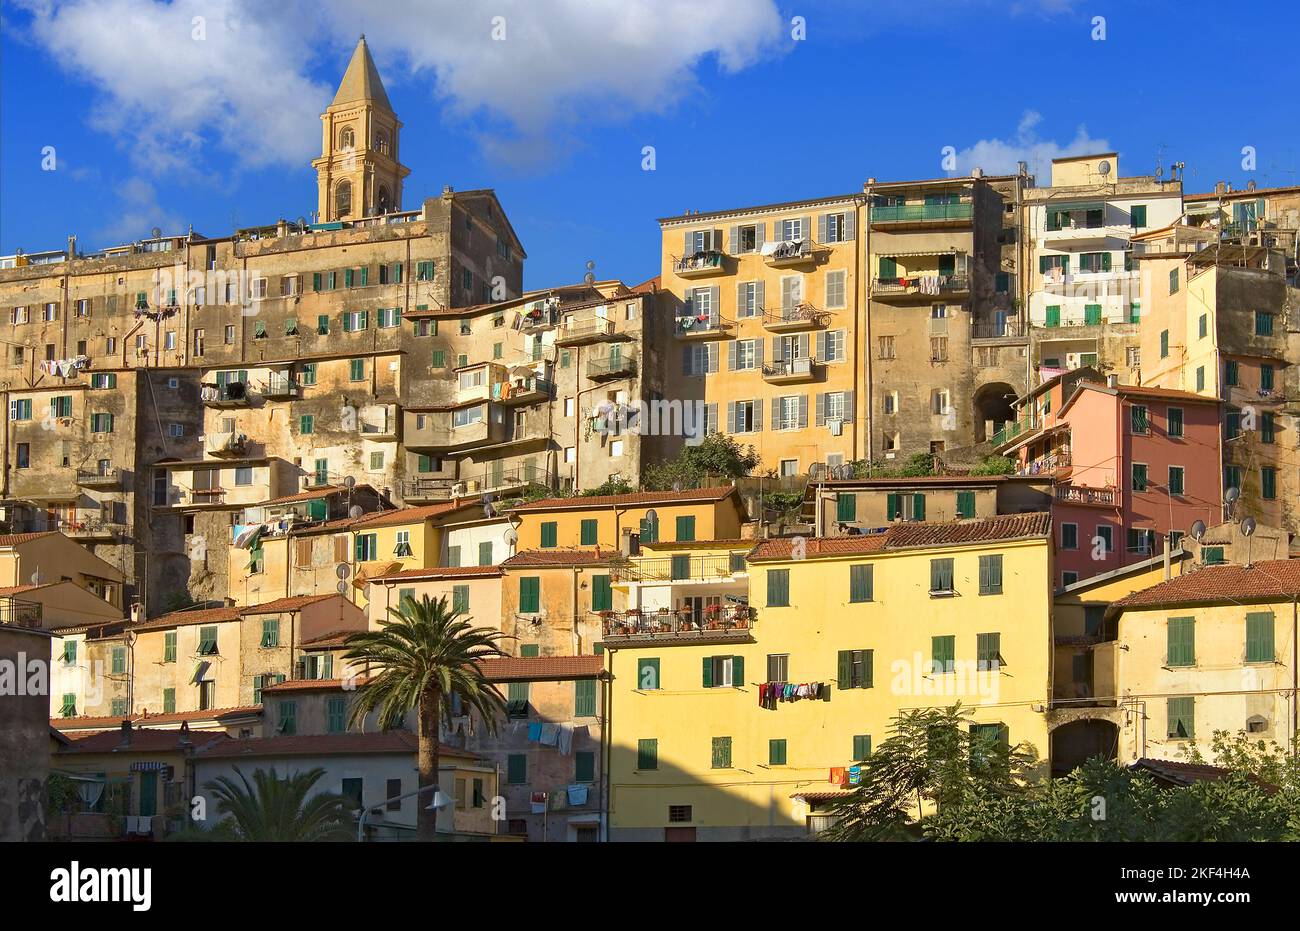 Die Altstadt von Ventimiglia in Ligurien, Italien. Der mittelalterliche Ort erhebt sich über dem Fluss Roia auf einem Hügel, auf dem Reste der alten g Stock Photo